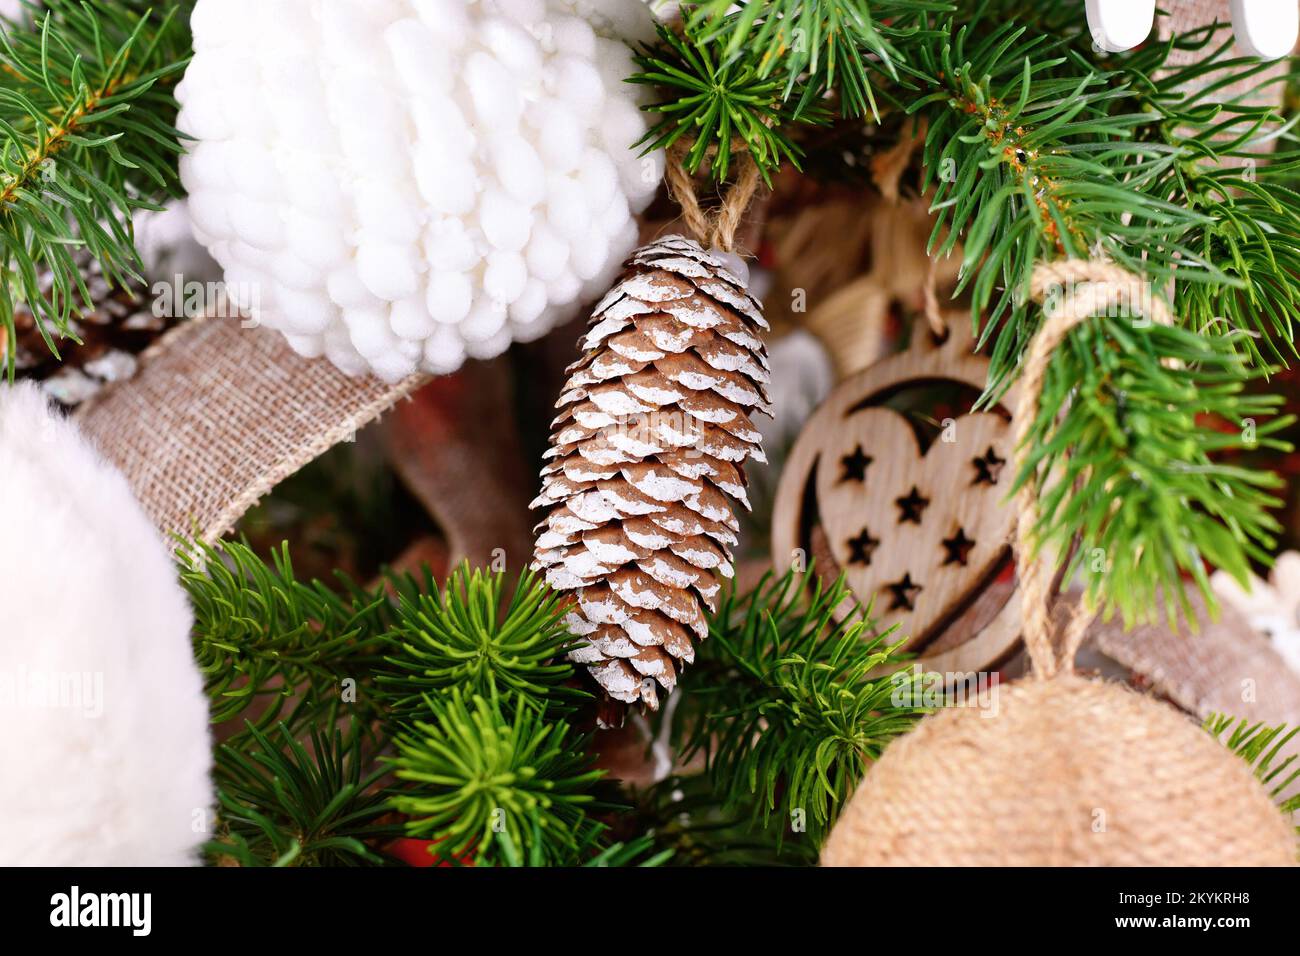 Natürliche Weihnachtsbaumschmuck aus Kiefernzapfen mit weißer Farbe Stockfoto